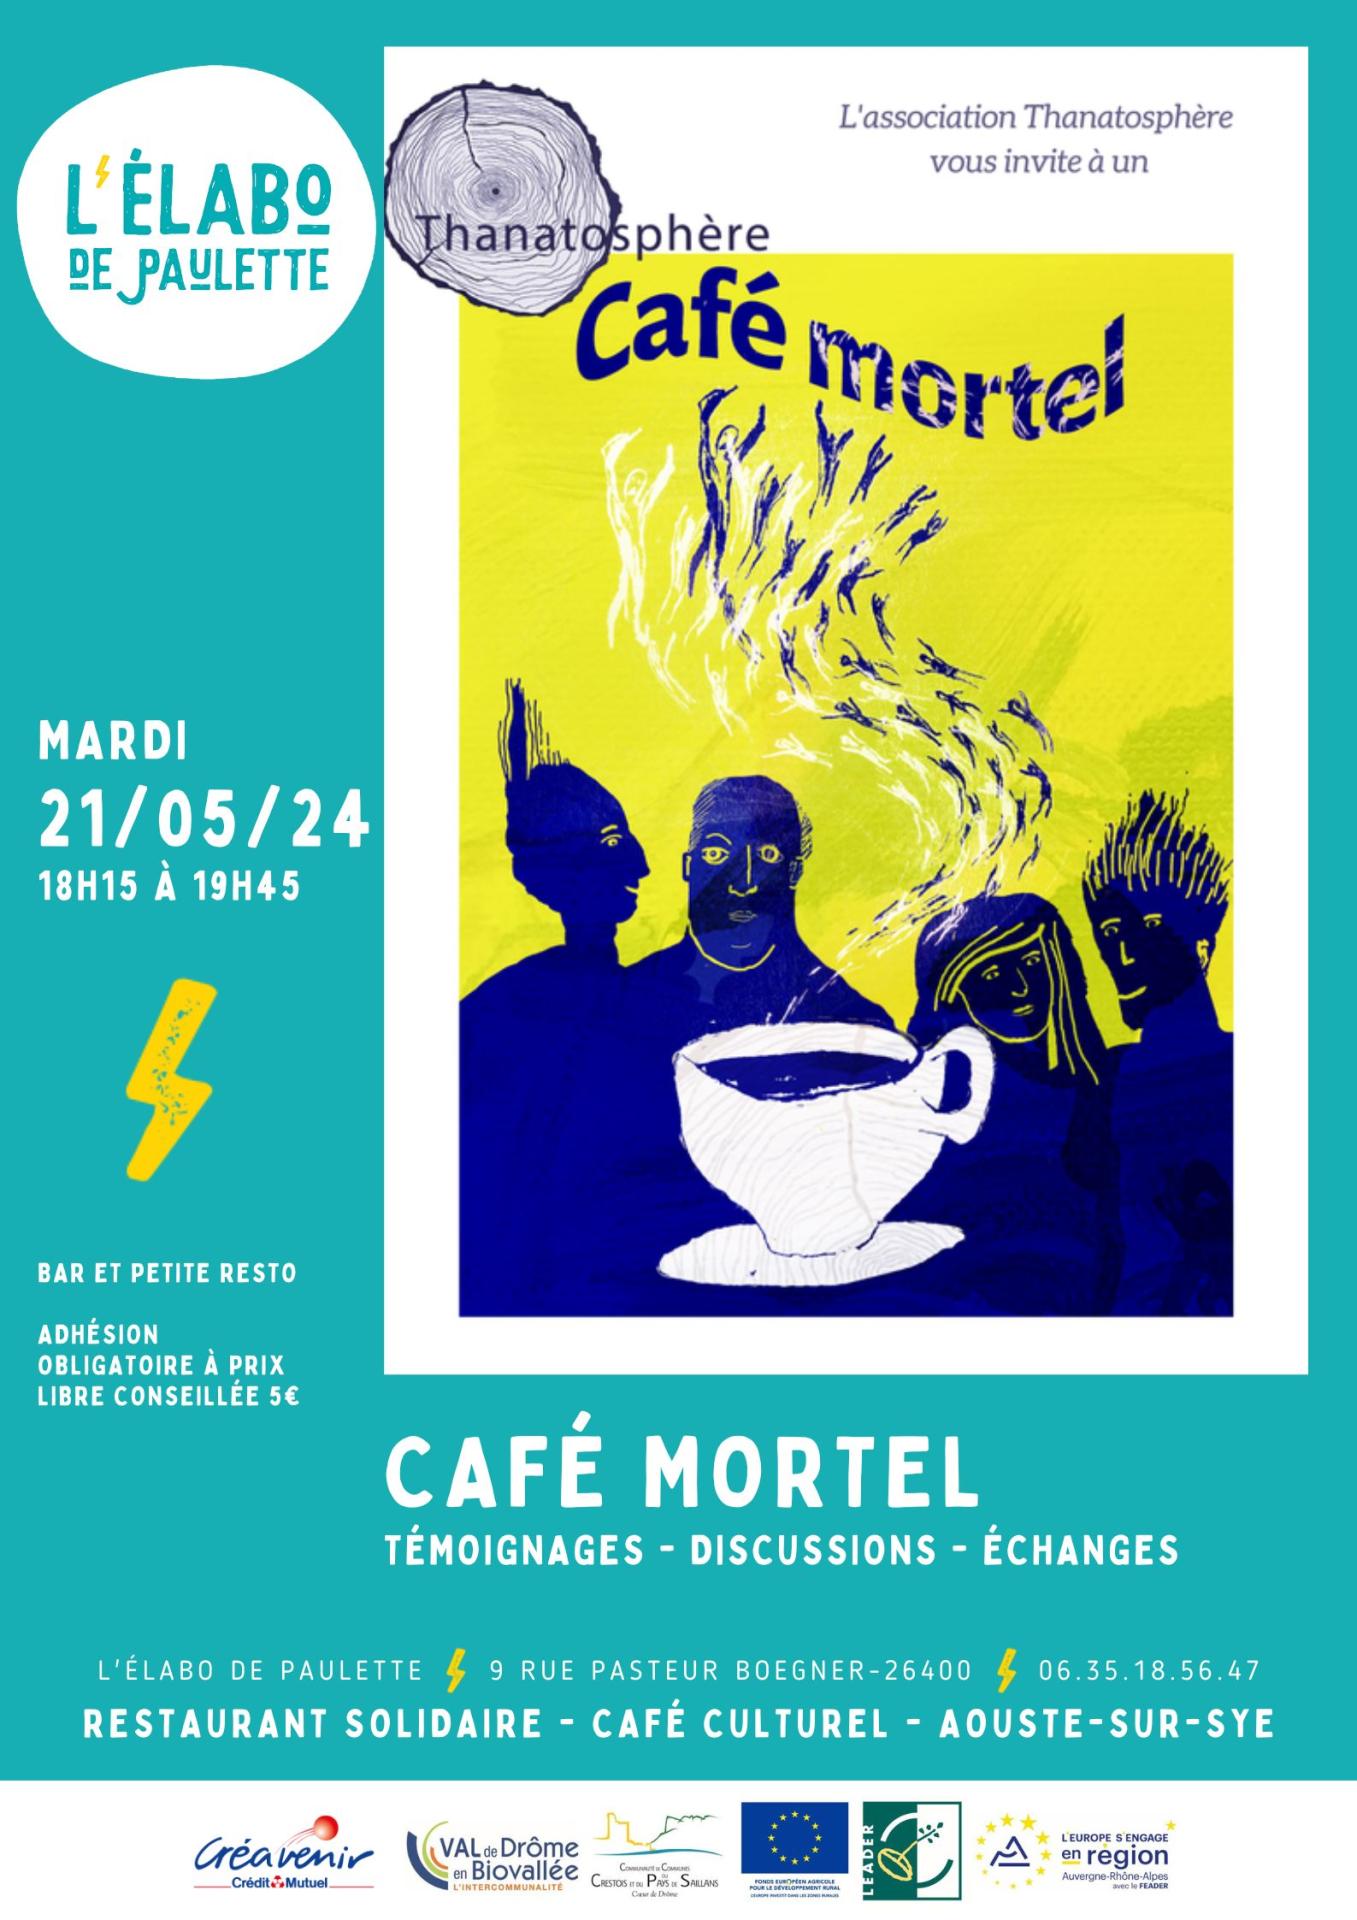 Cafe mortel 2